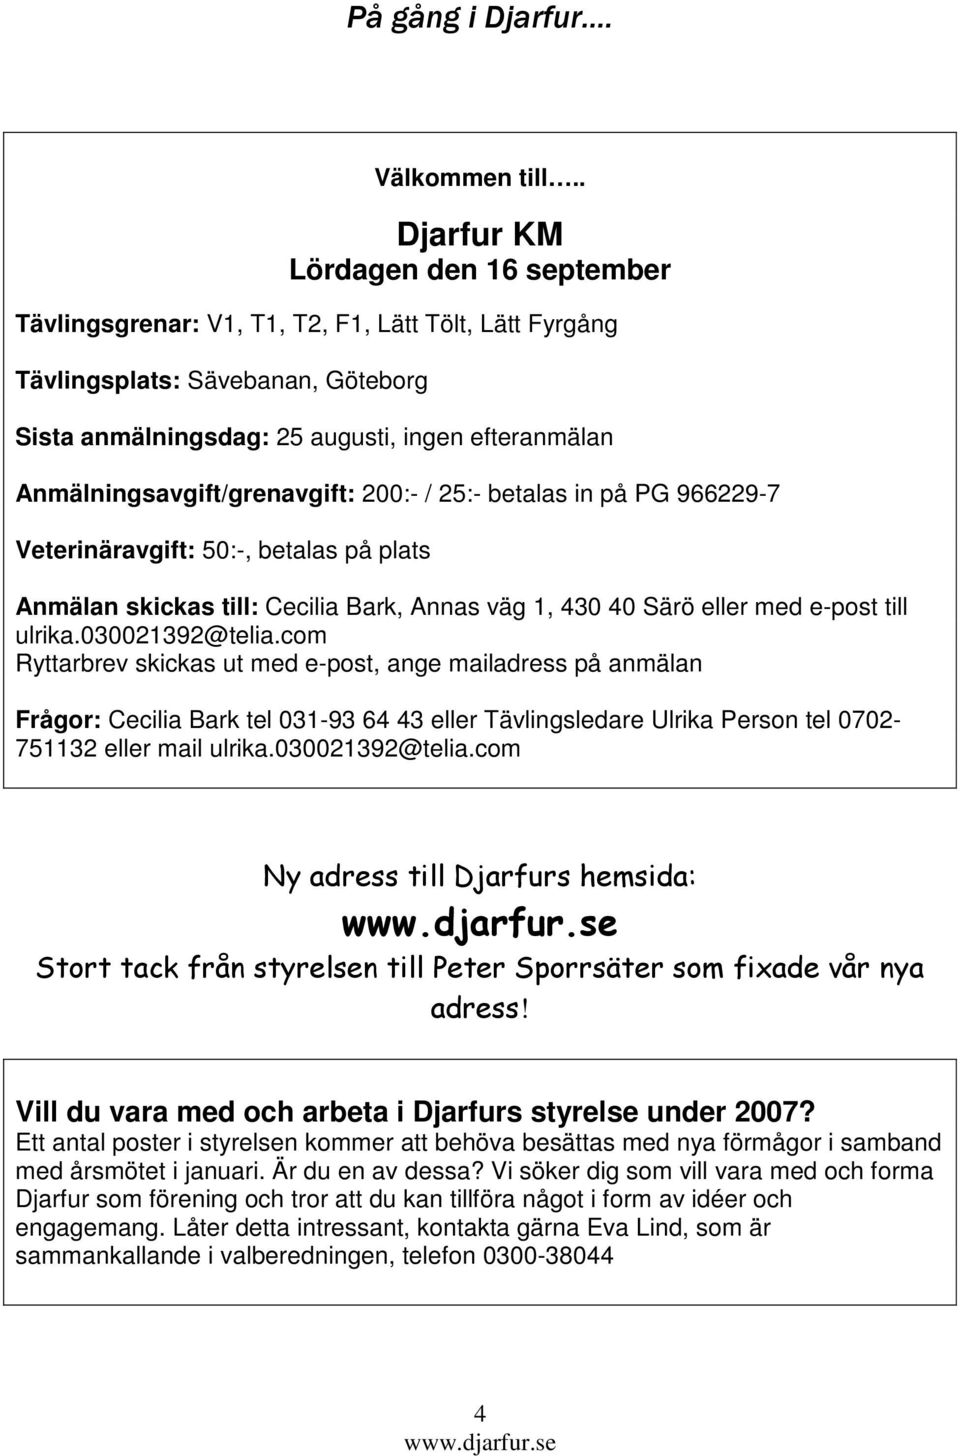 Anmälningsavgift/grenavgift: 200:- / 25:- betalas in på PG 966229-7 Veterinäravgift: 50:-, betalas på plats Anmälan skickas till: Cecilia Bark, Annas väg 1, 430 40 Särö eller med e-post till ulrika.